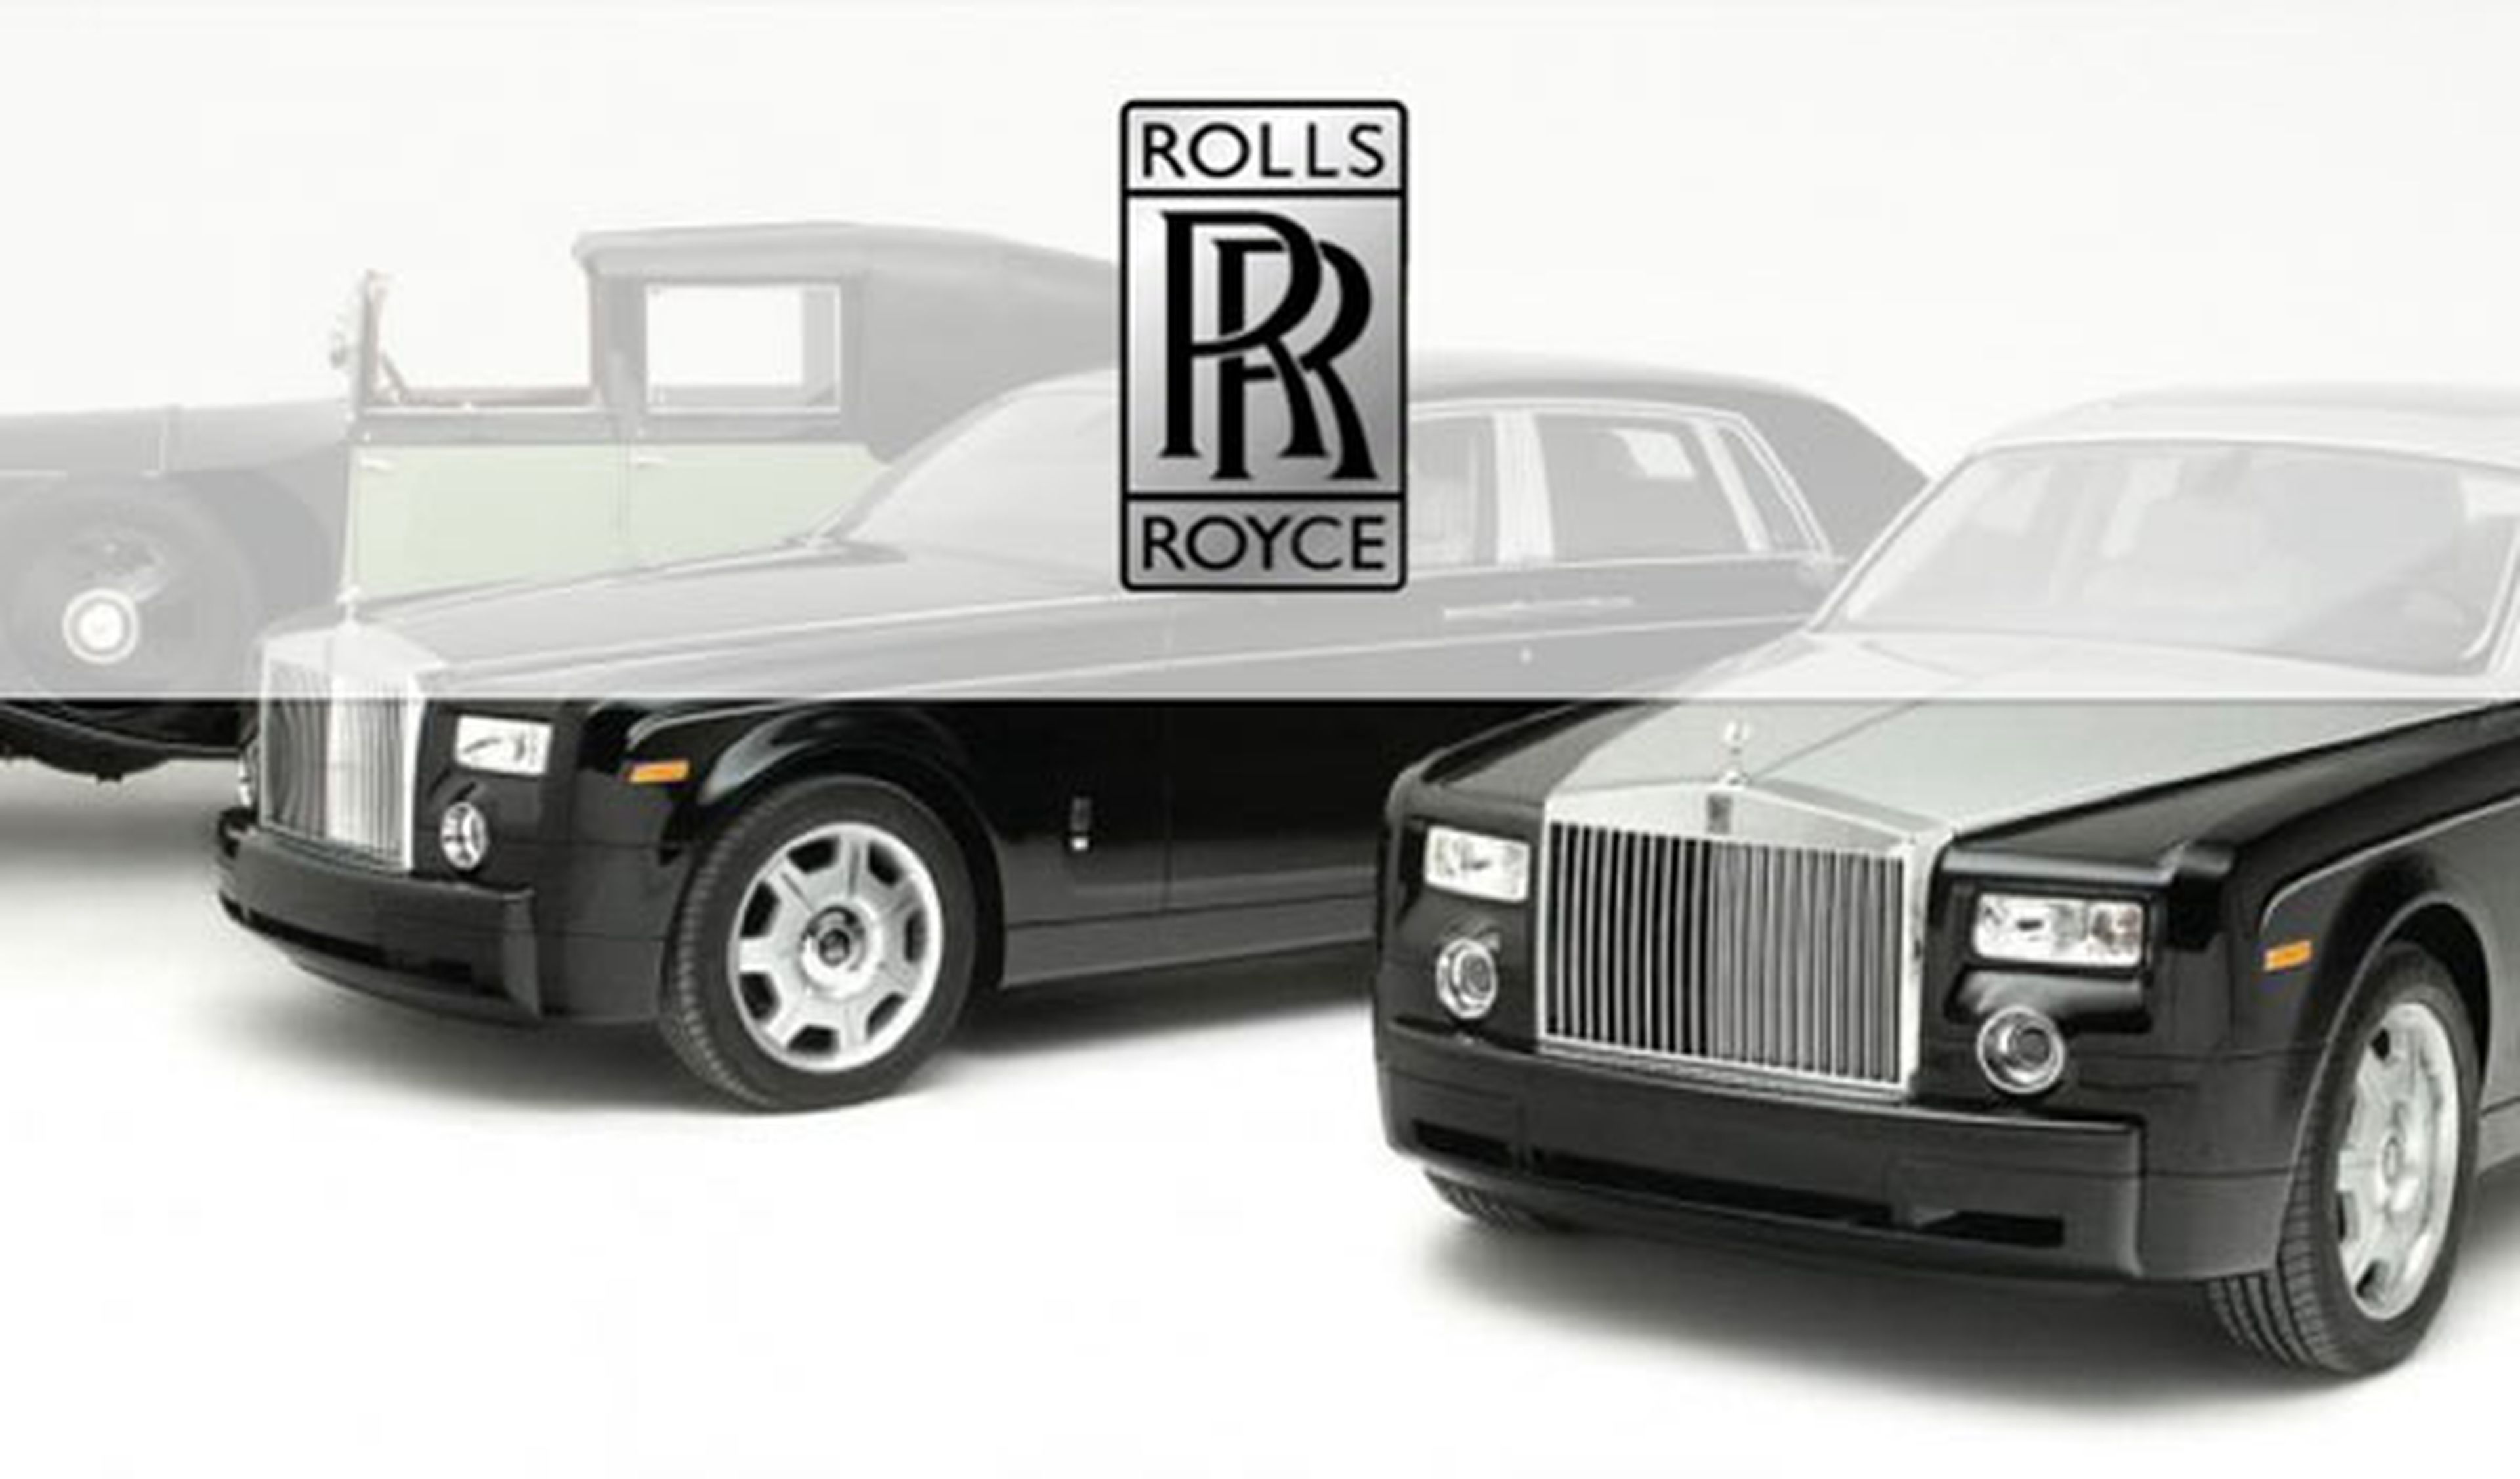 Rolls Royce estudia lanzar un SUV en 2017